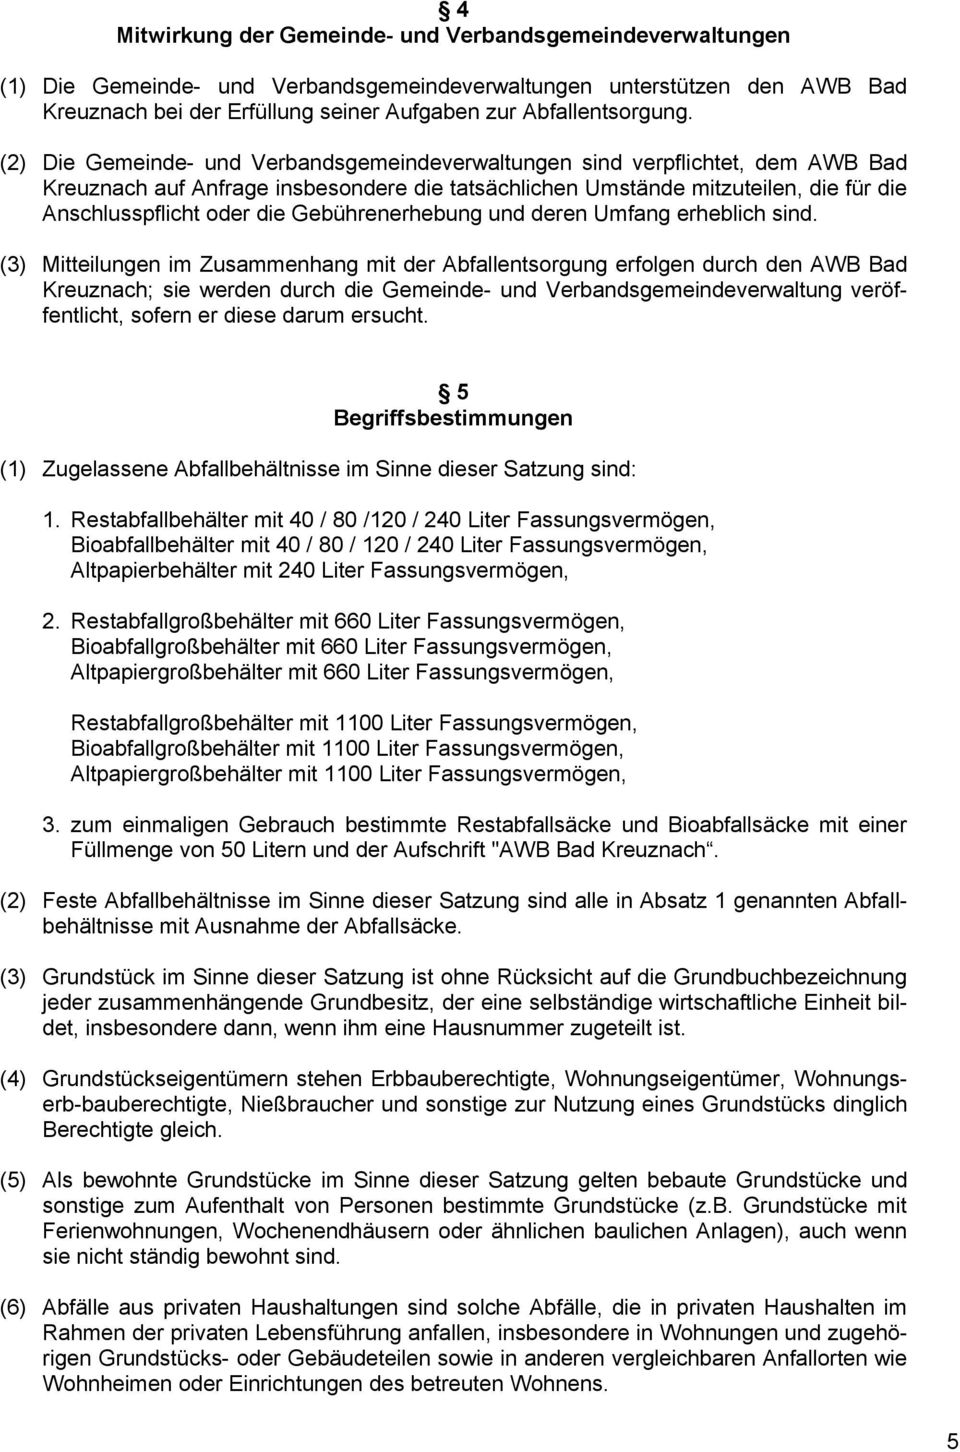 (2) Die Gemeinde- und Verbandsgemeindeverwaltungen sind verpflichtet, dem AWB Bad Kreuznach auf Anfrage insbesondere die tatsächlichen Umstände mitzuteilen, die für die Anschlusspflicht oder die